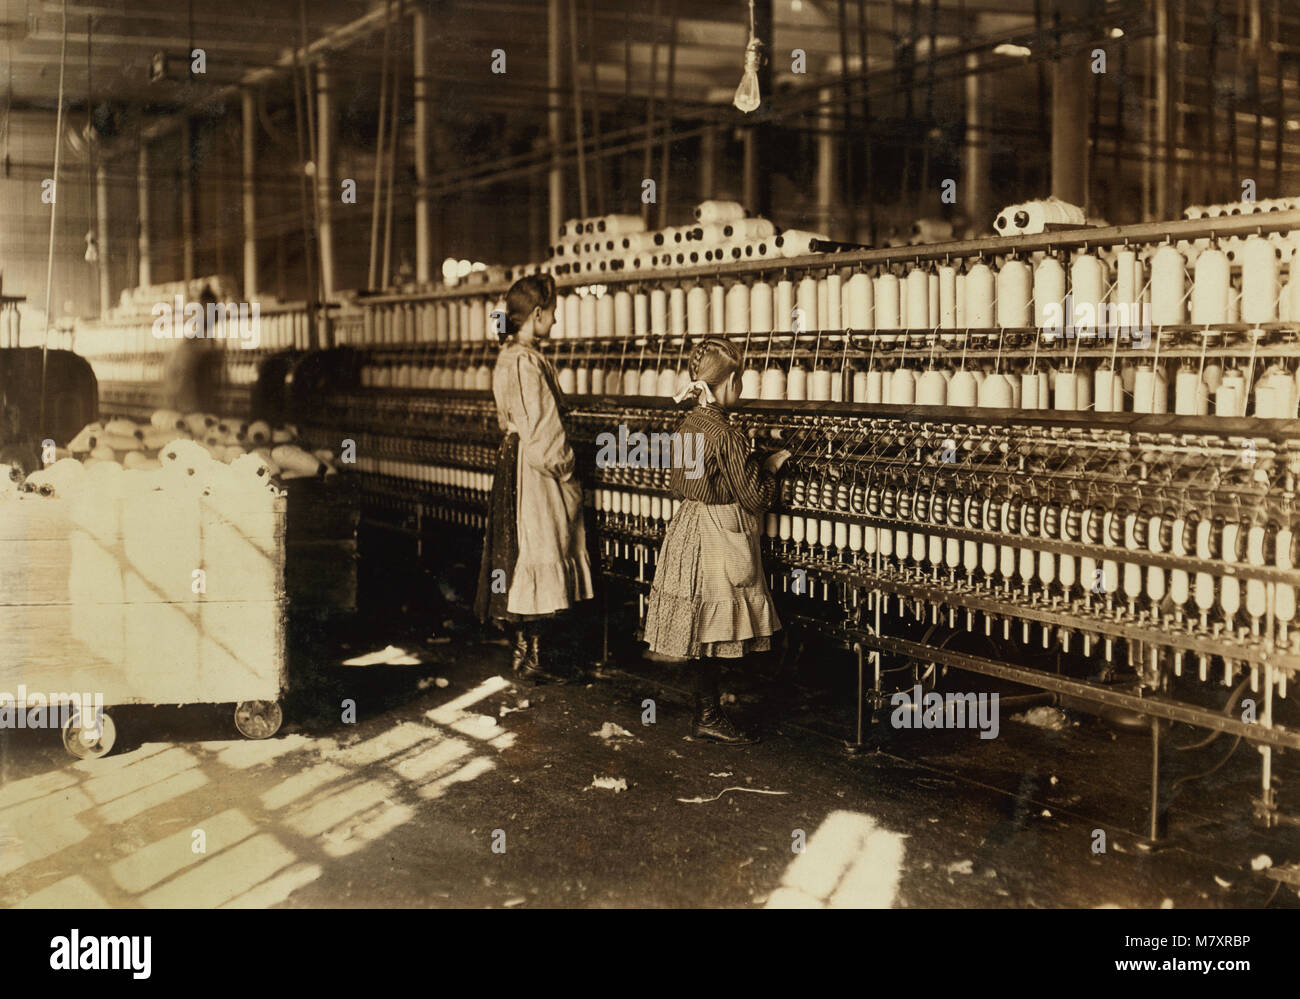 Zwei junge Spinner, in voller Länge Porträt in der Spinnerei Zimmer im Cotton Mill, Newberry, South Carolina, USA, Lewis Hine für nationale Kinderarbeit Ausschuss, Dezember 1908 Stockfoto